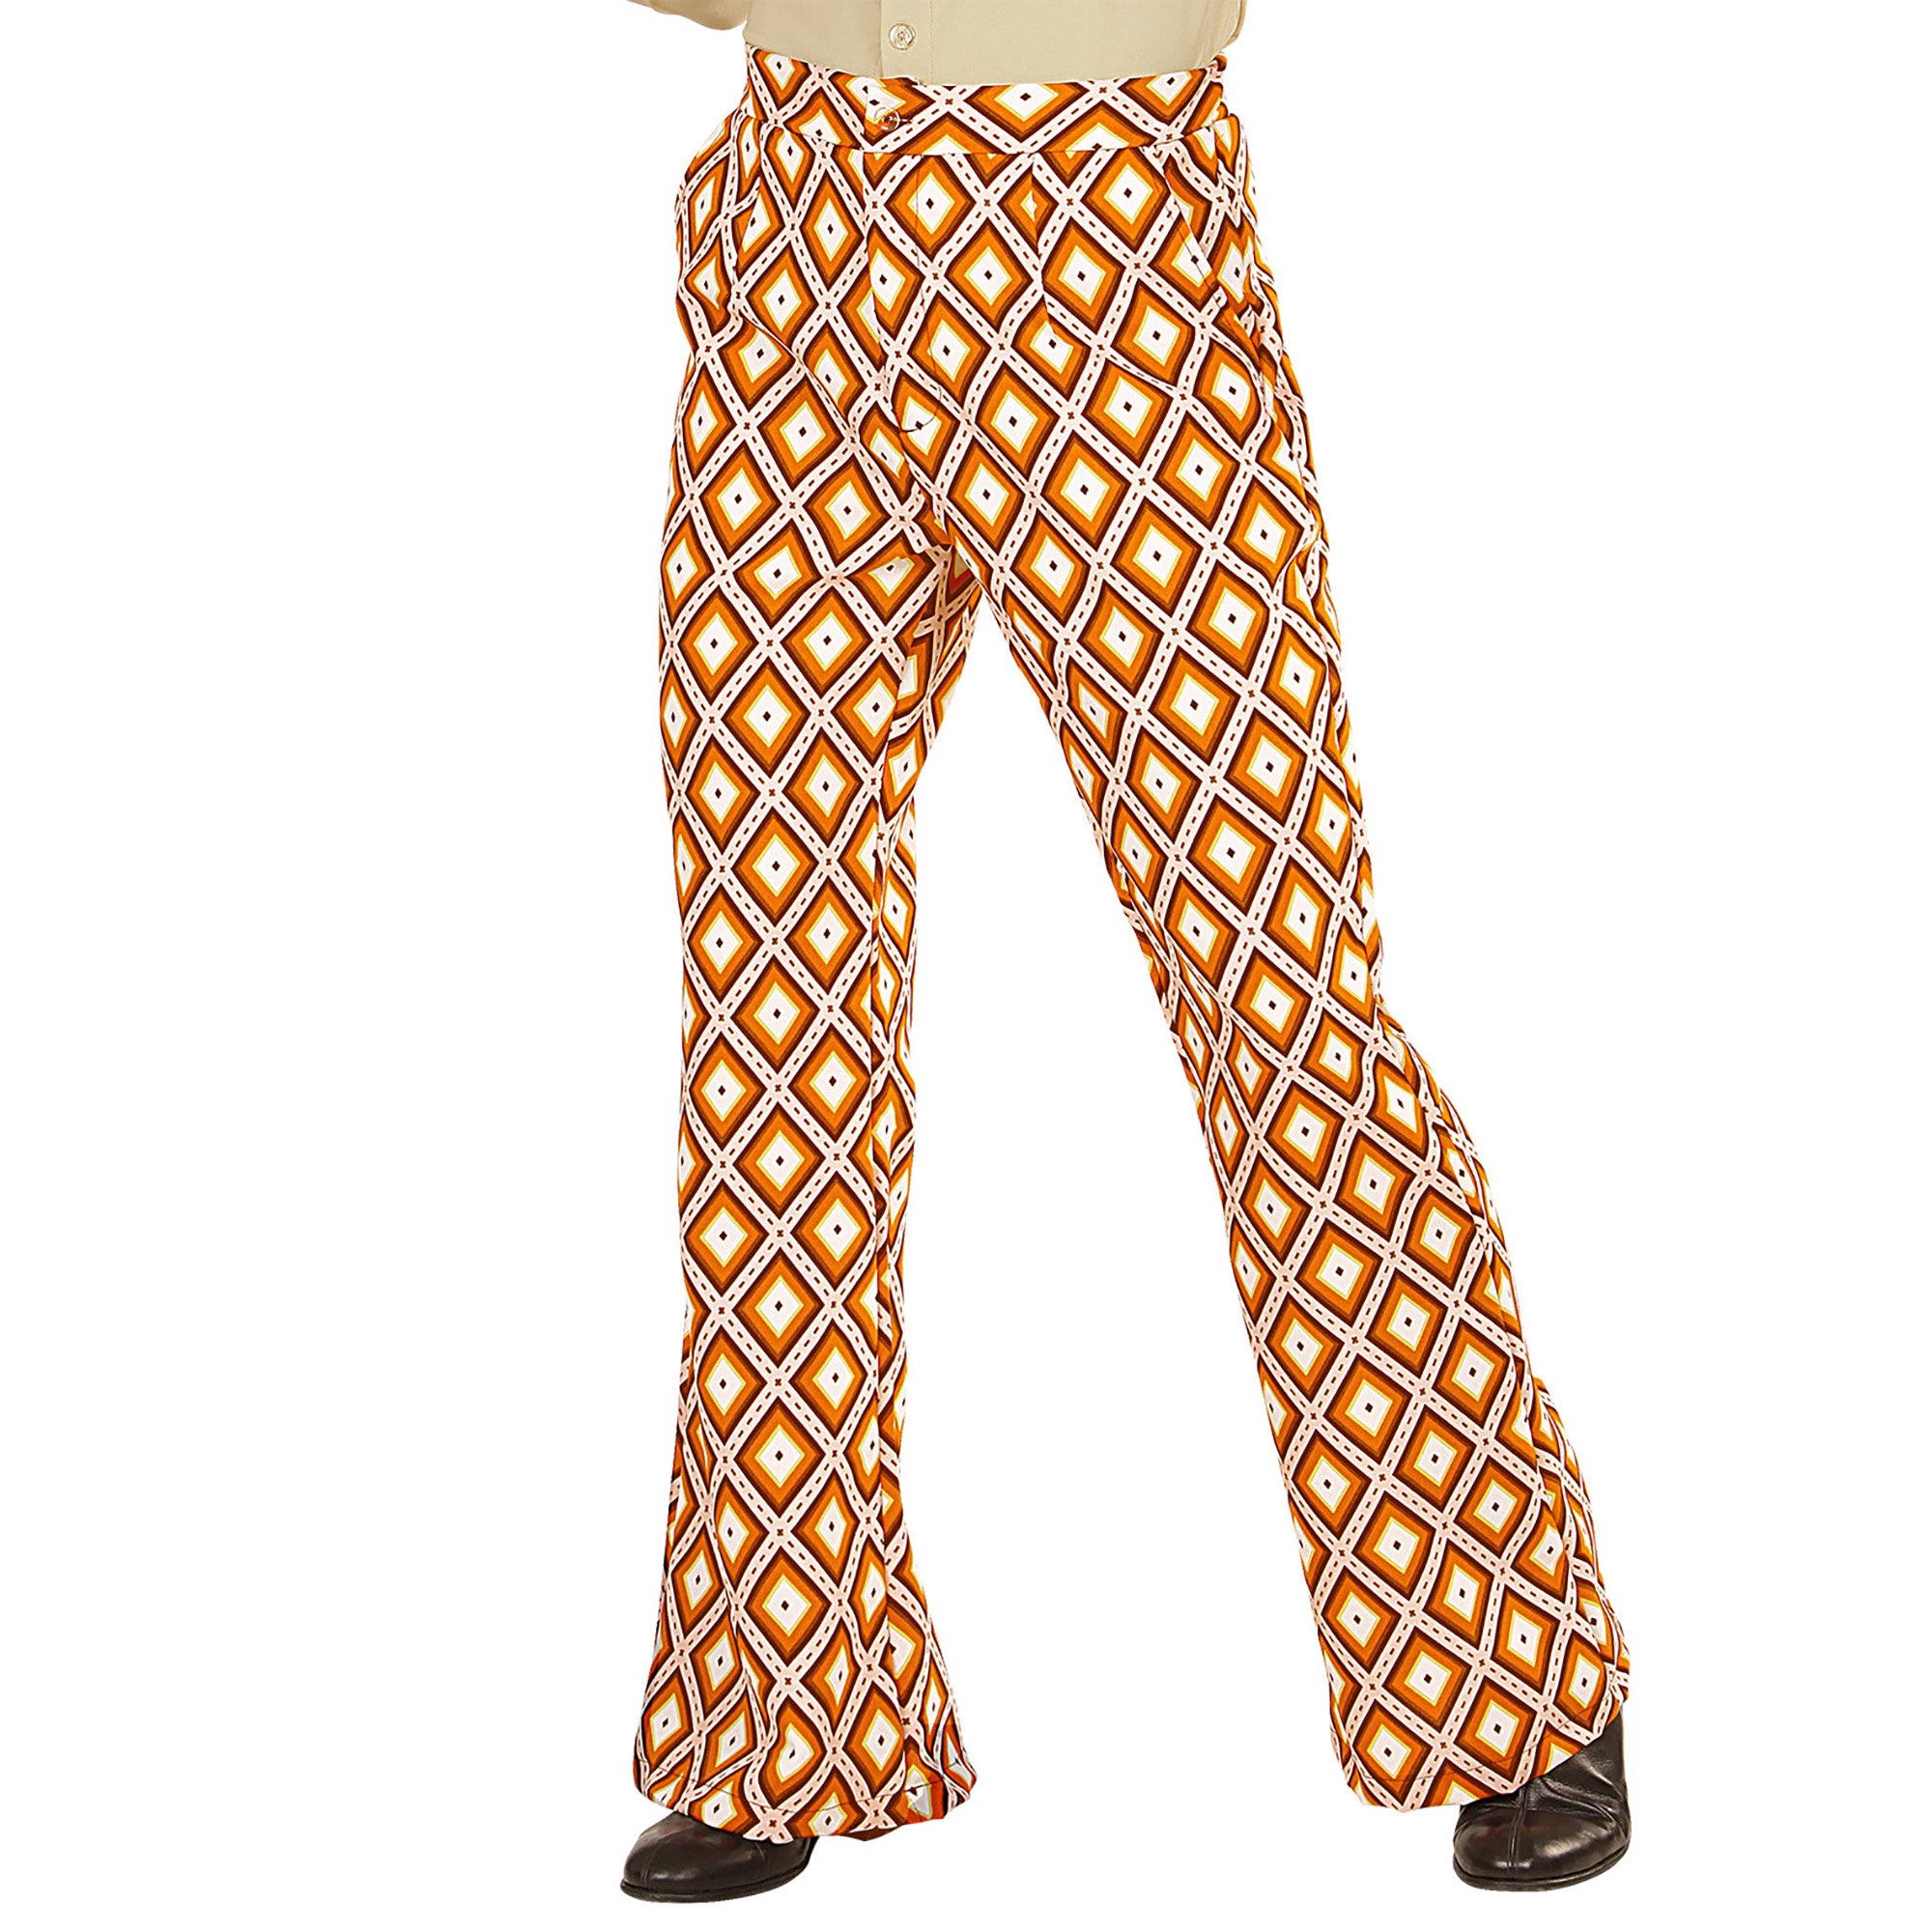 WIDMANN - Groovy jaren 70 broek voor mannen - L / XL